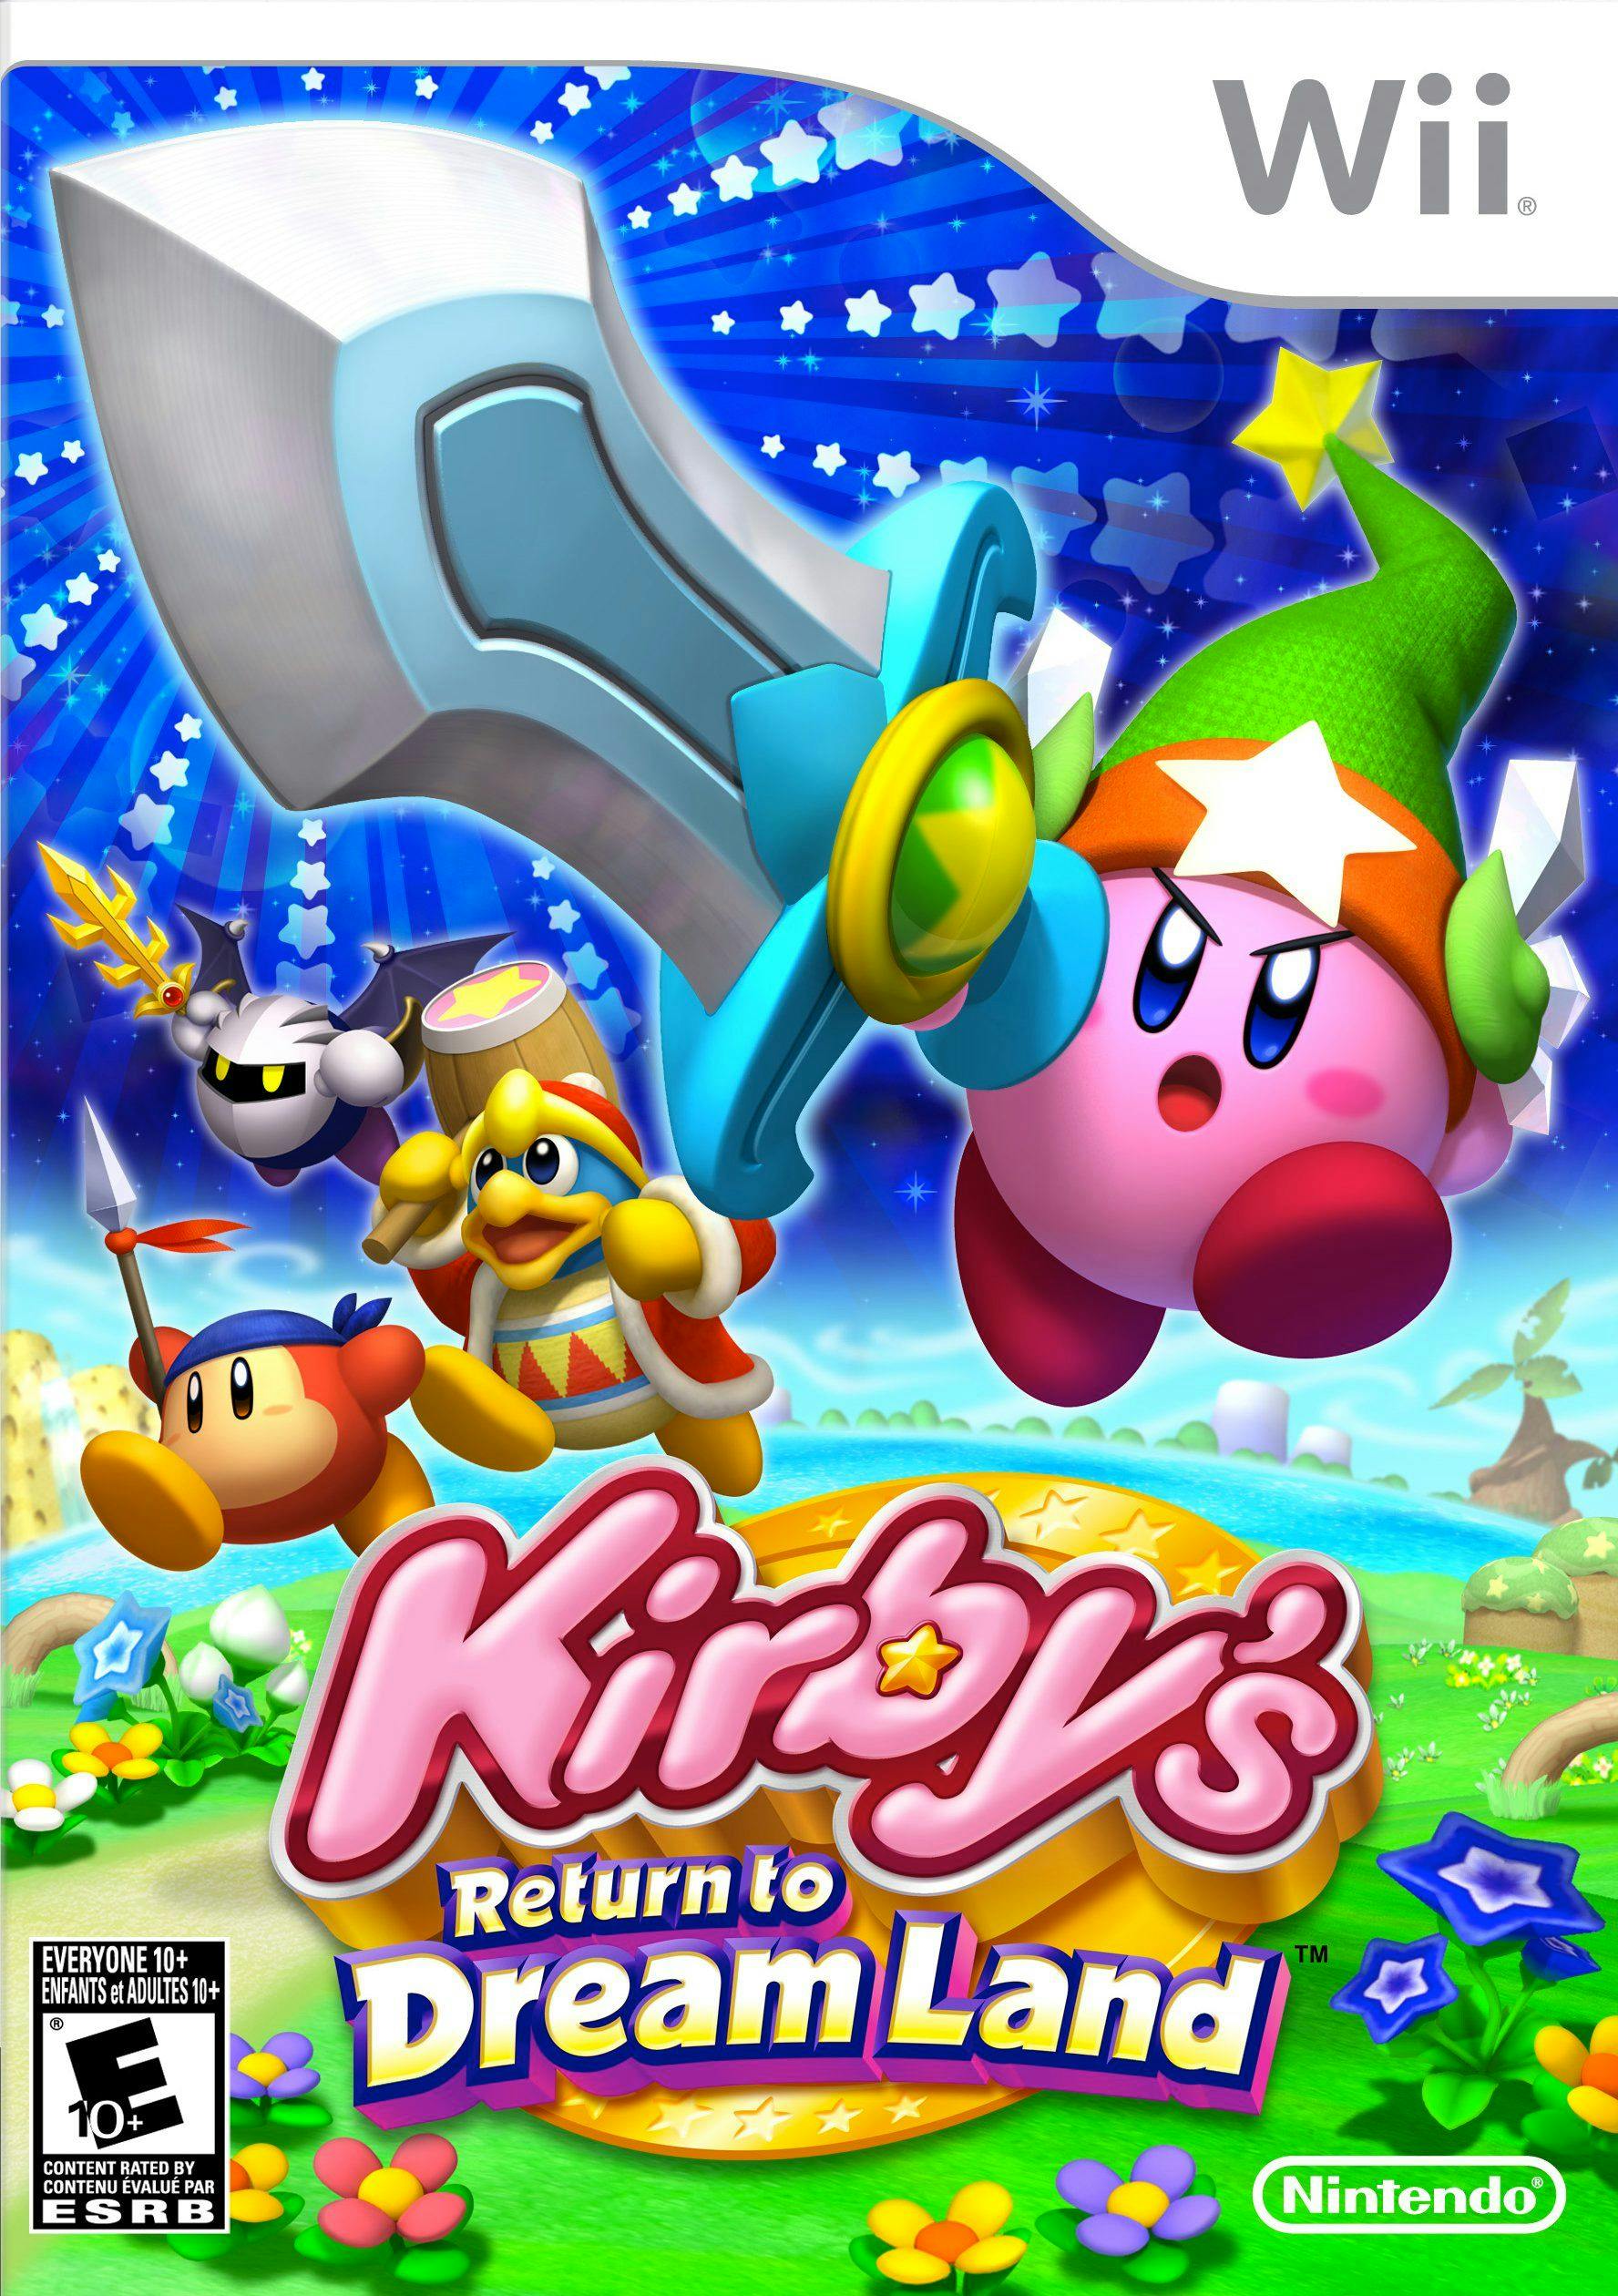 Top 10 Kirby Series Games Ranked by Sales | HackerNoon